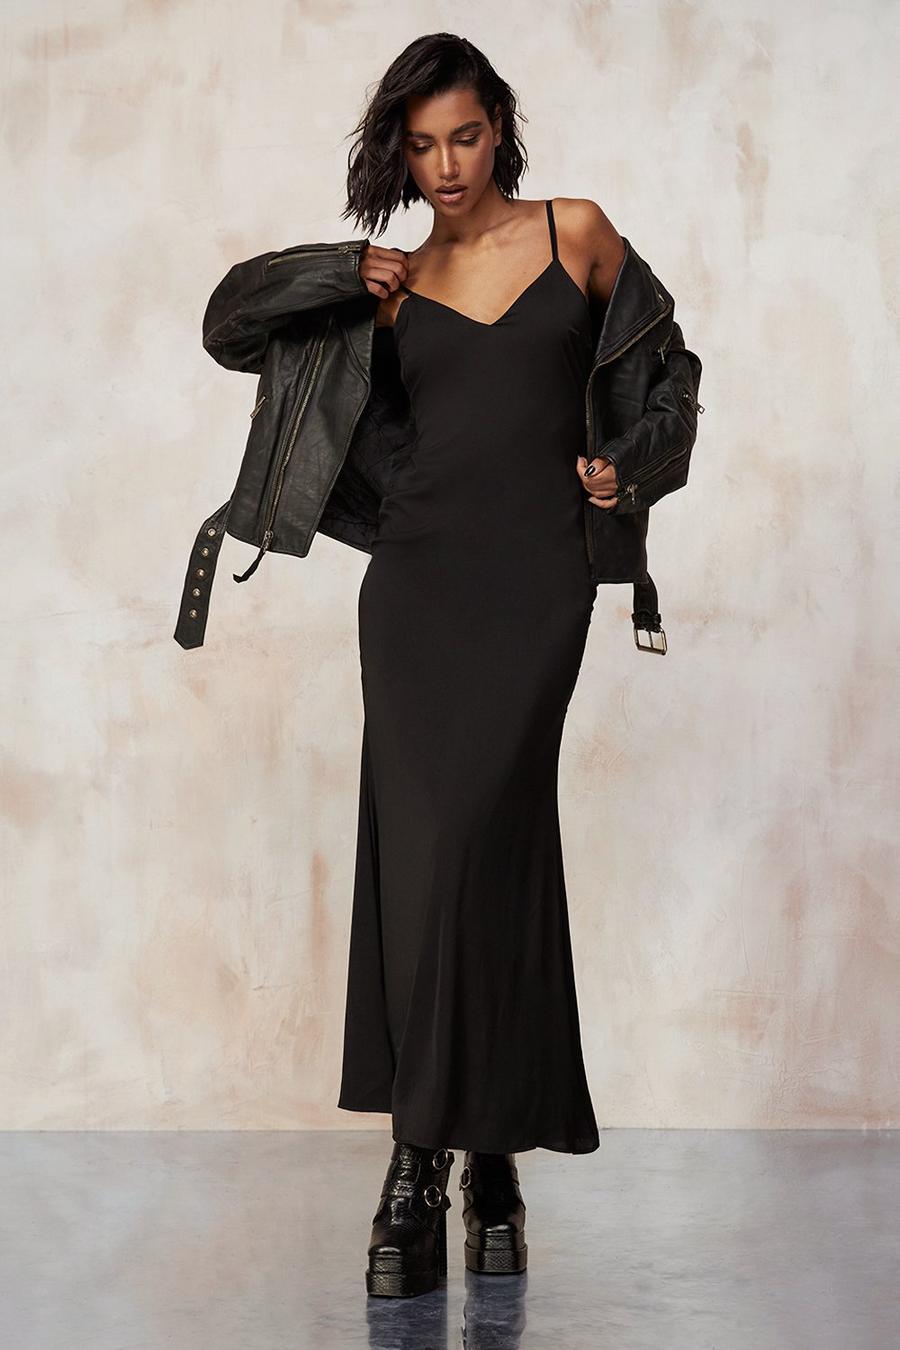 Black svart Kourtney Kardashian Barker Maxi Satin Dress